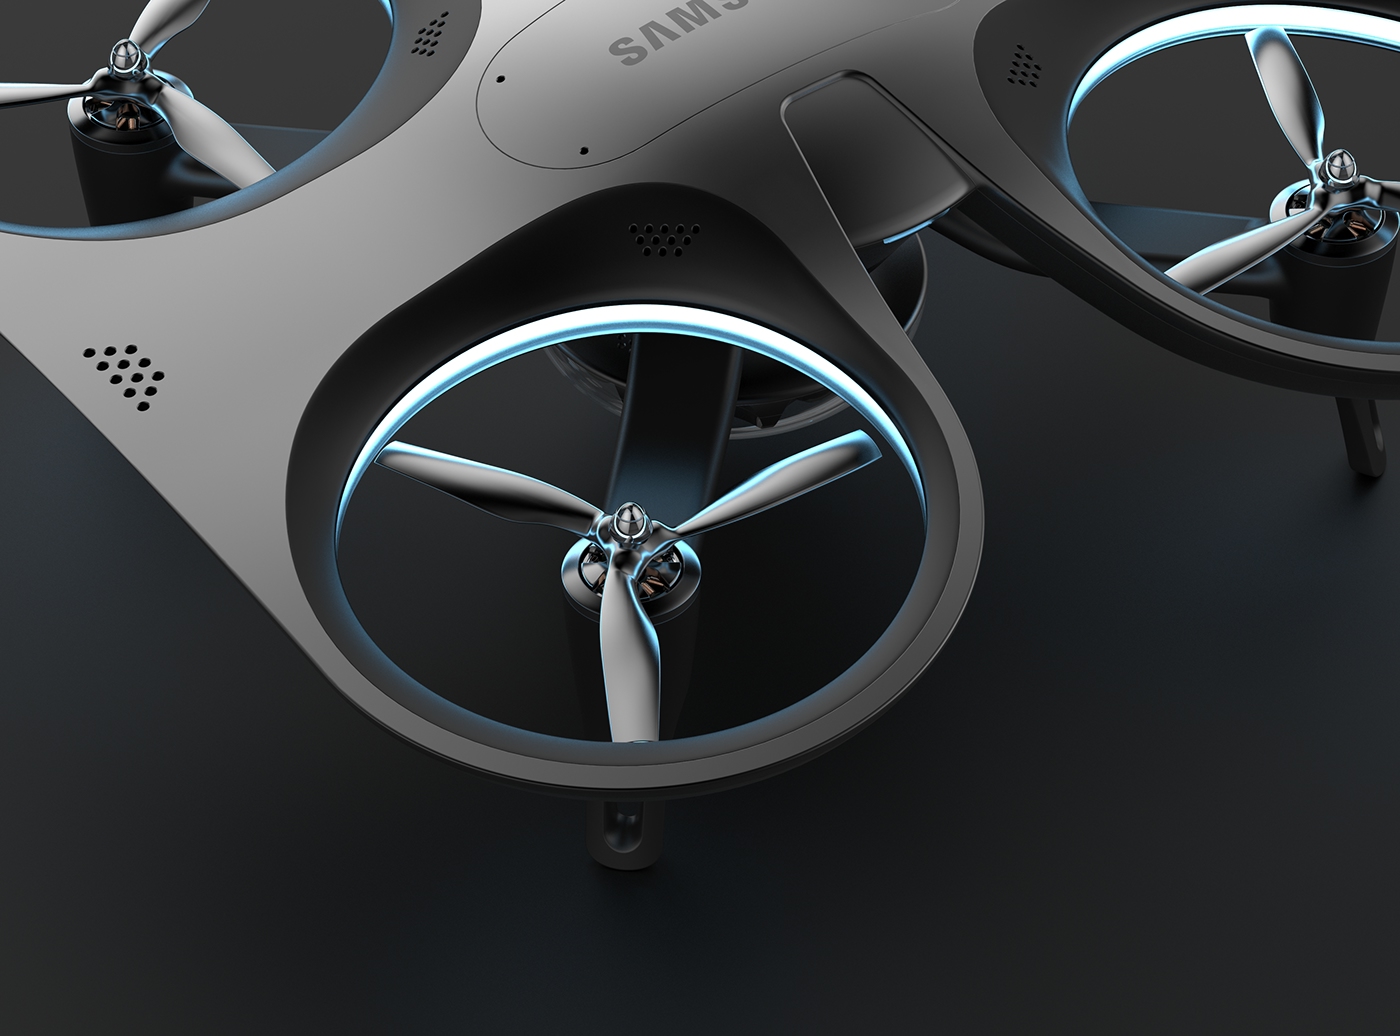 drone Samsung public safety minkyo jaehyuk design robot